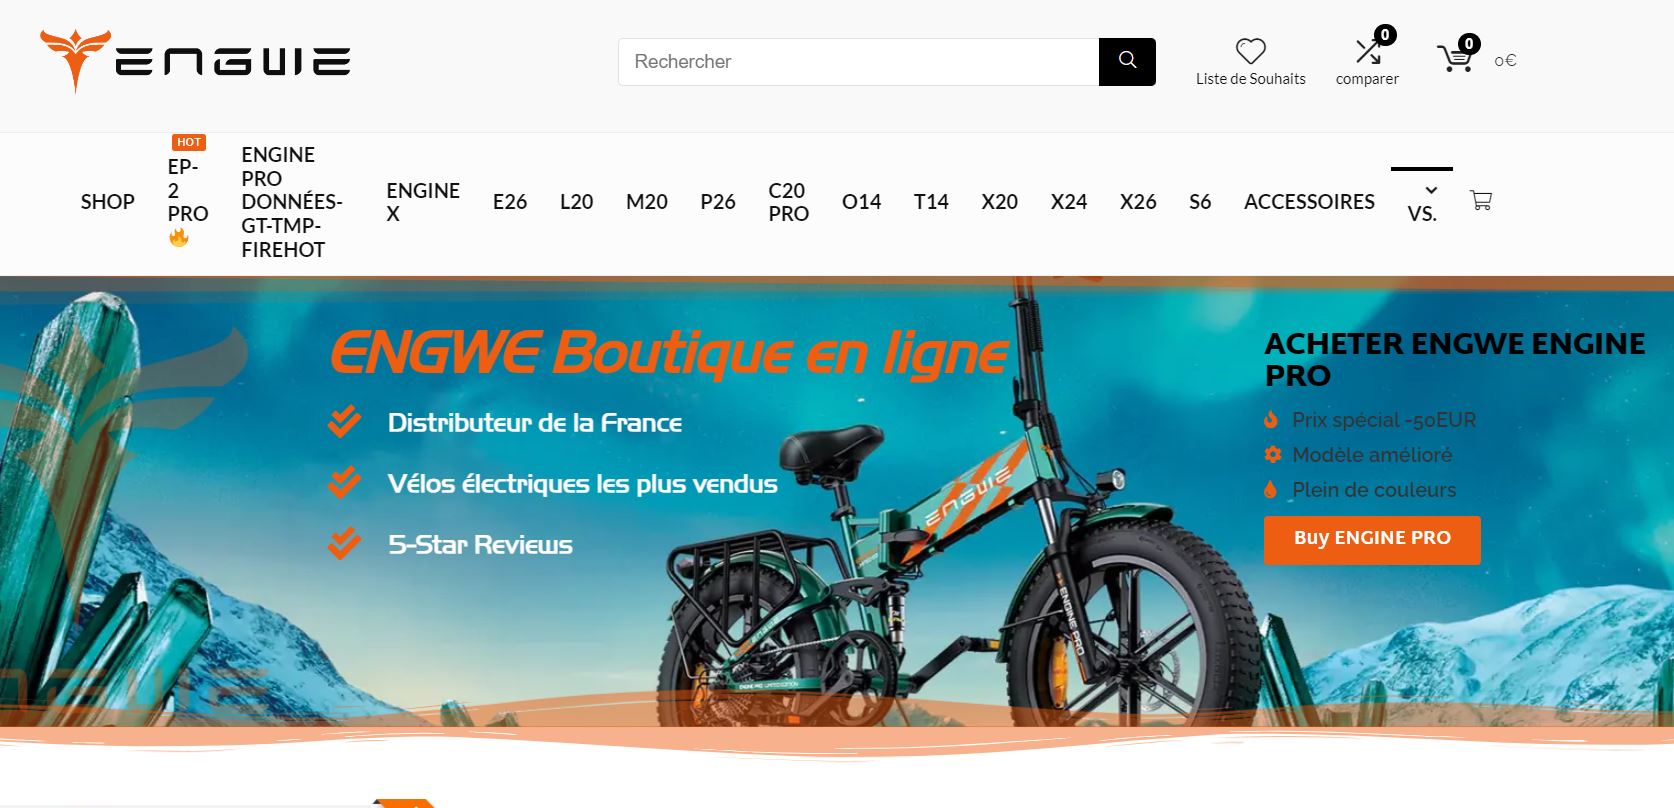 Une image du site Web d'enguie, un fabricant de vélo électrique chinois (vélos électriques en Chine).